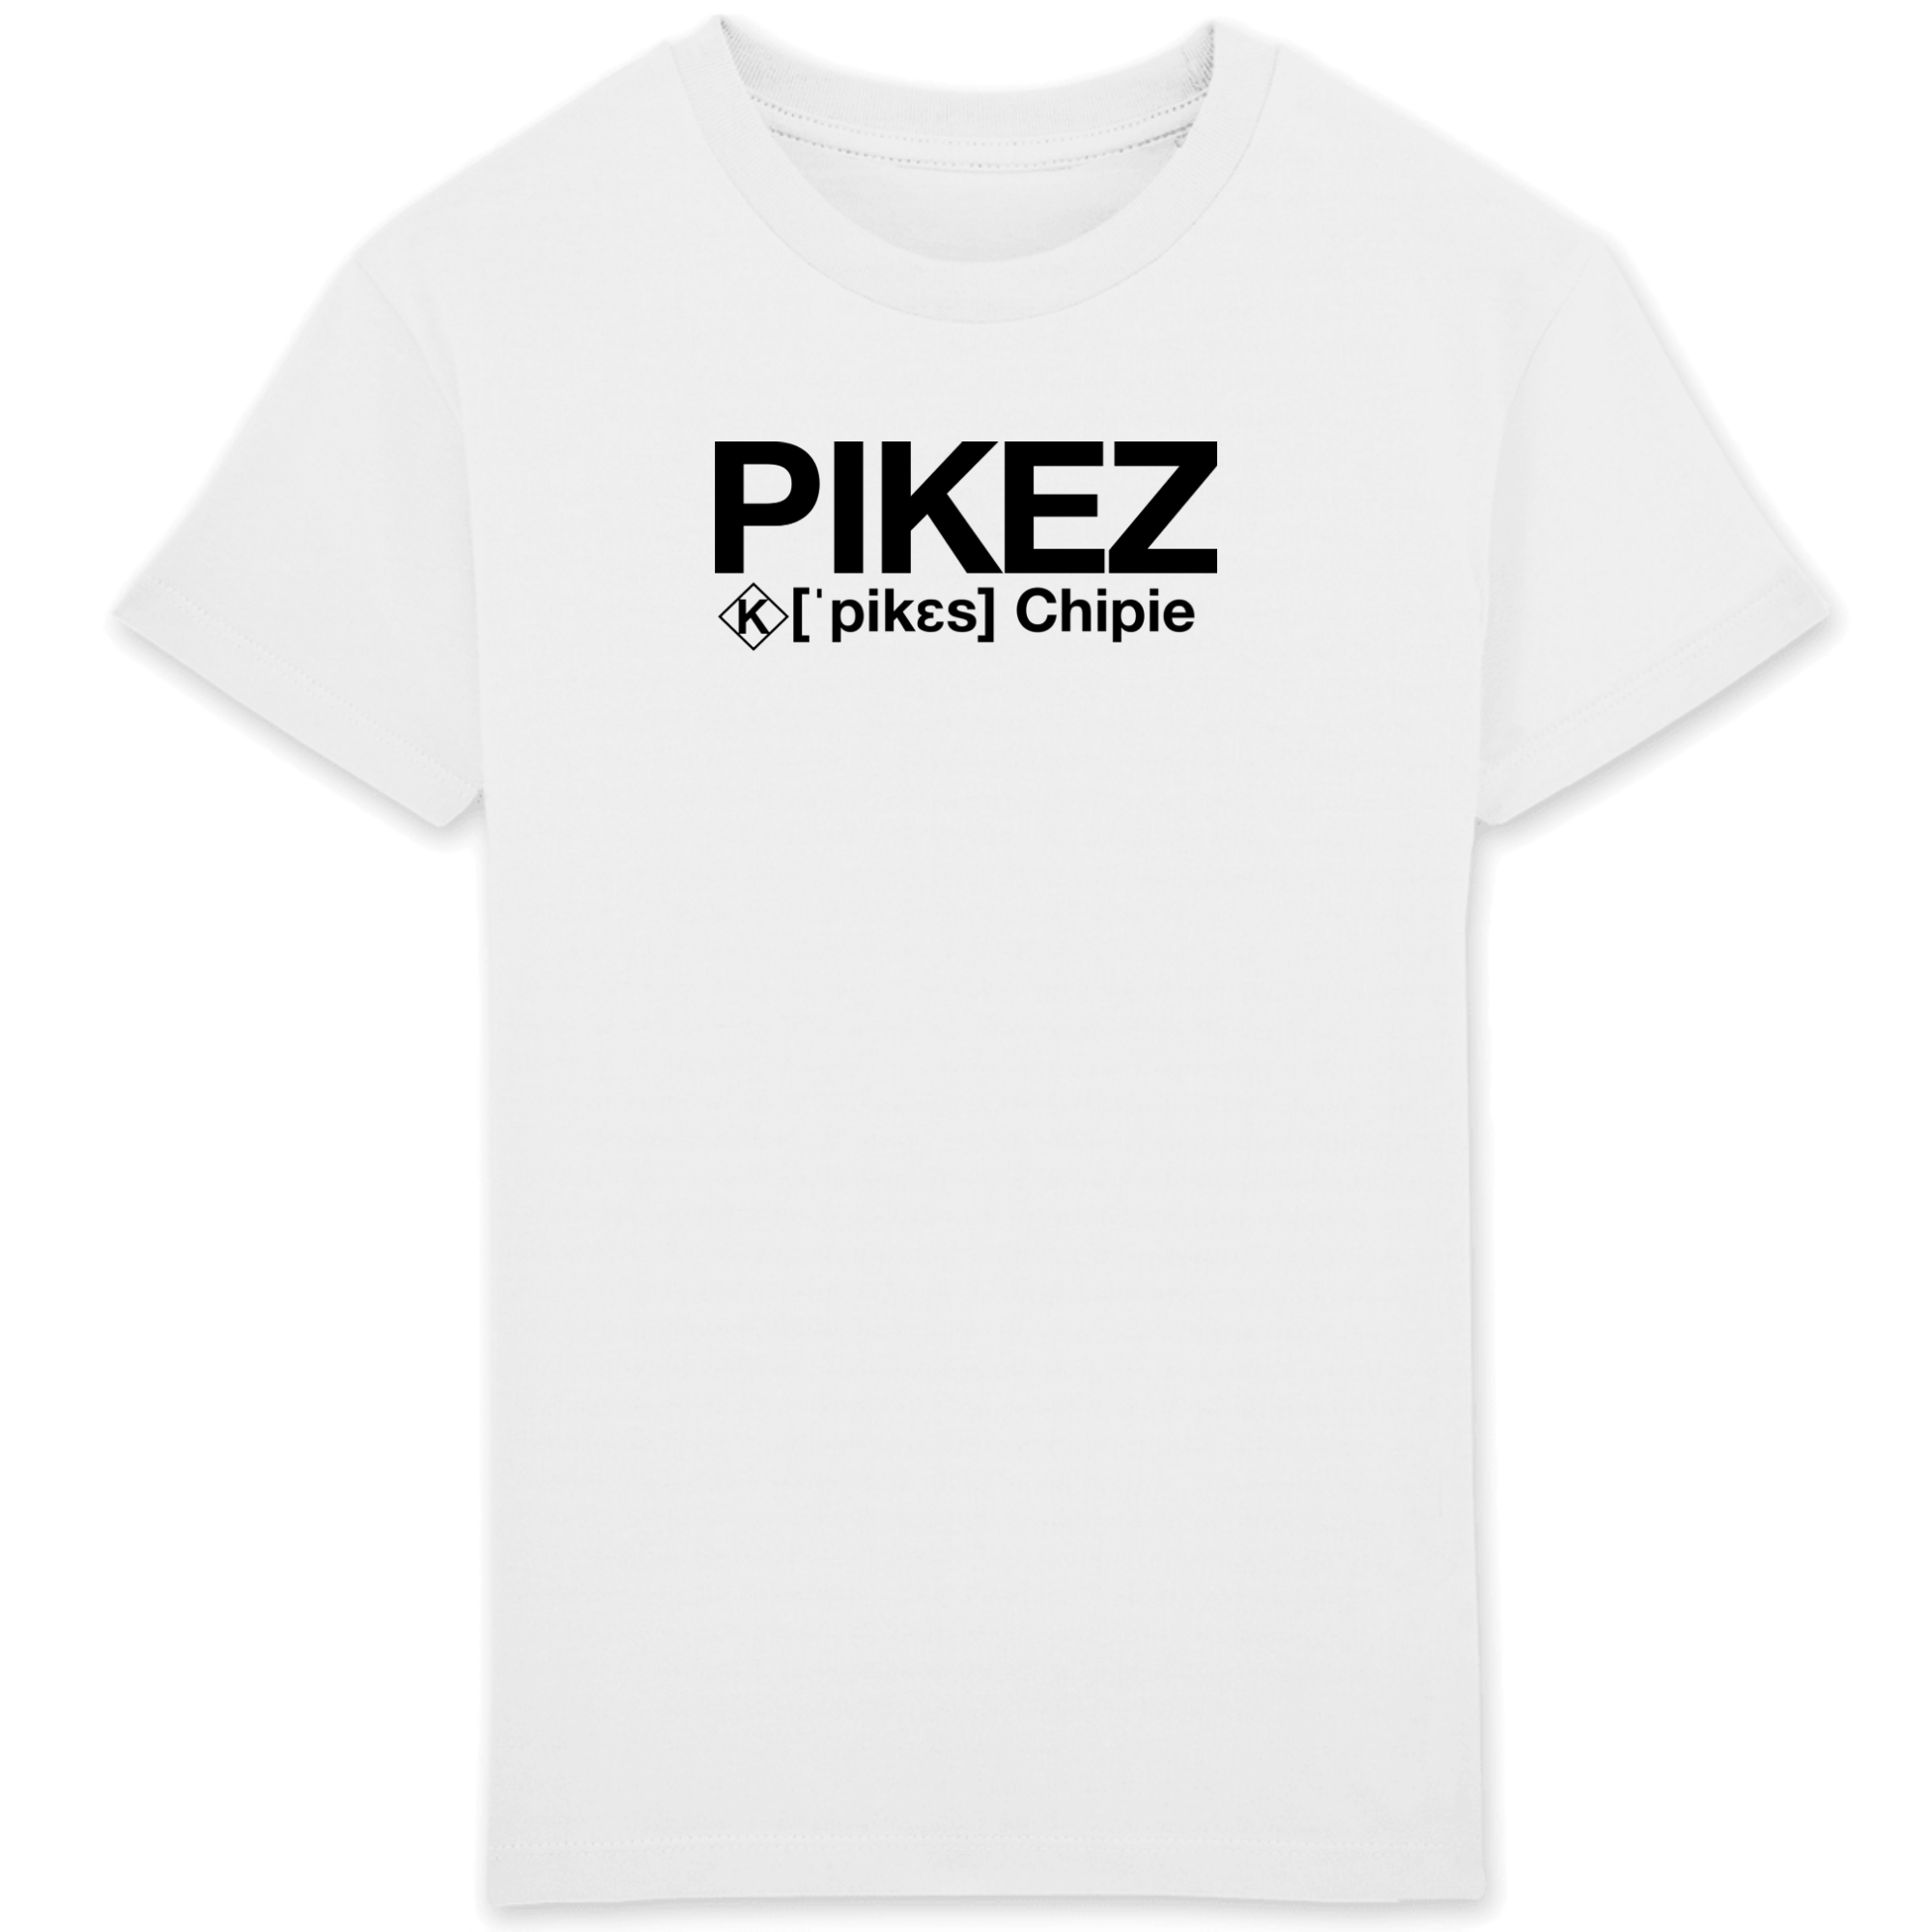 Pikez T-shirt (Chipie)